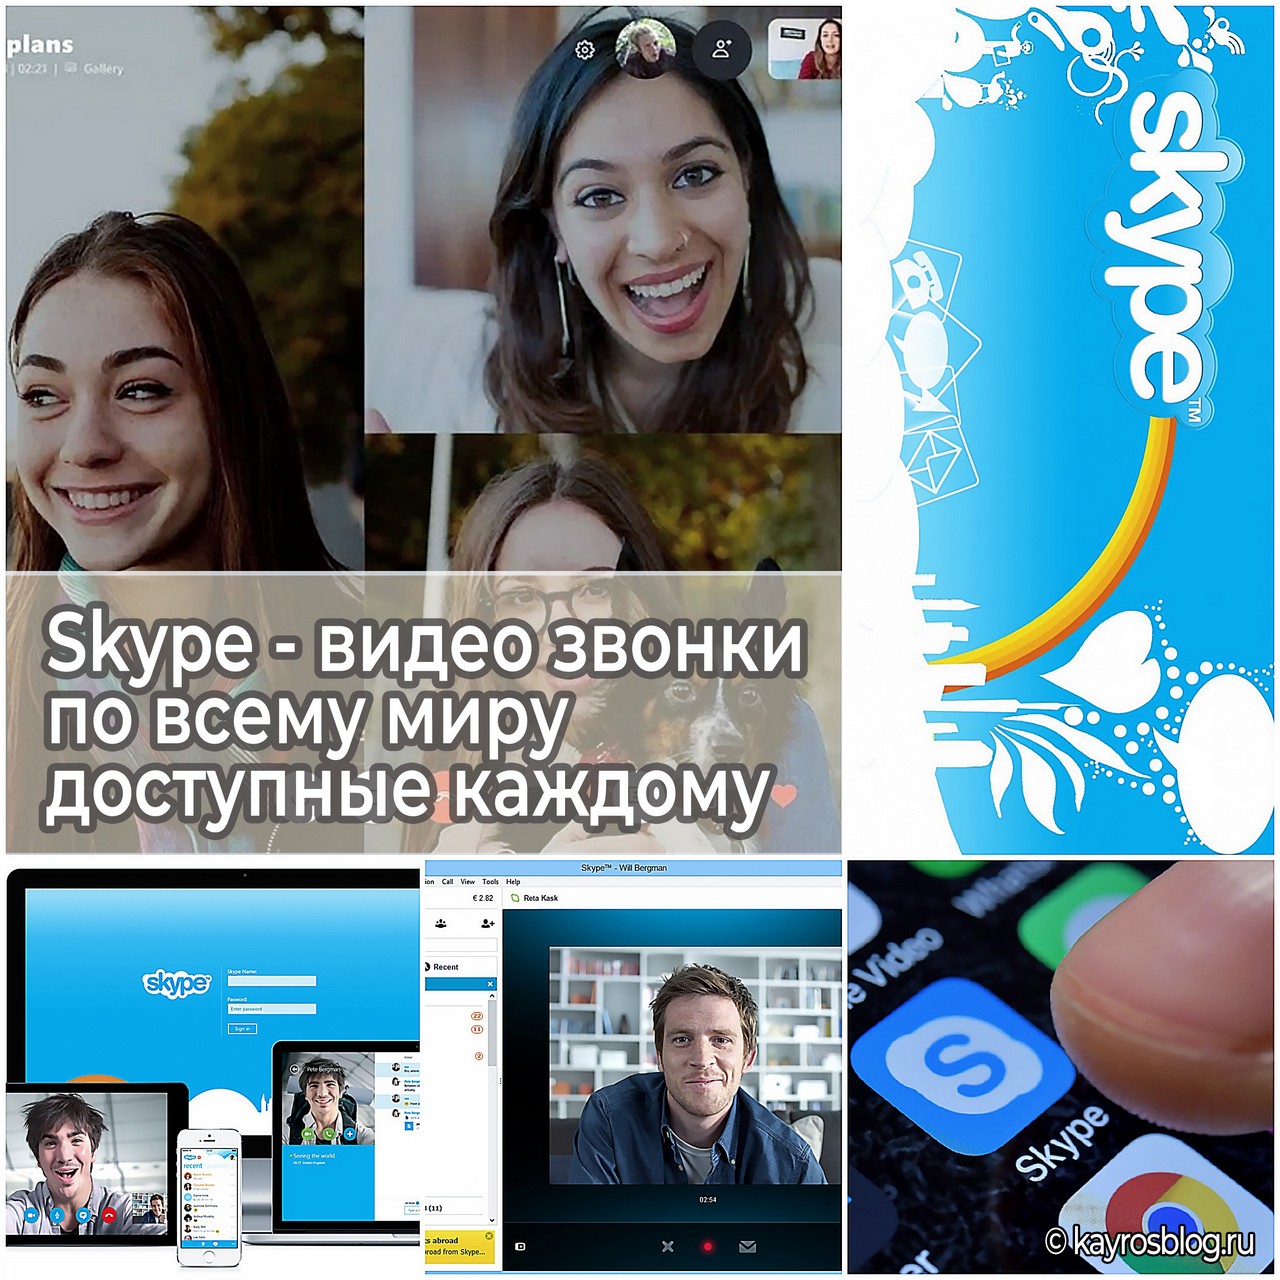 Skype - видео звонки по всему миру доступные каждому